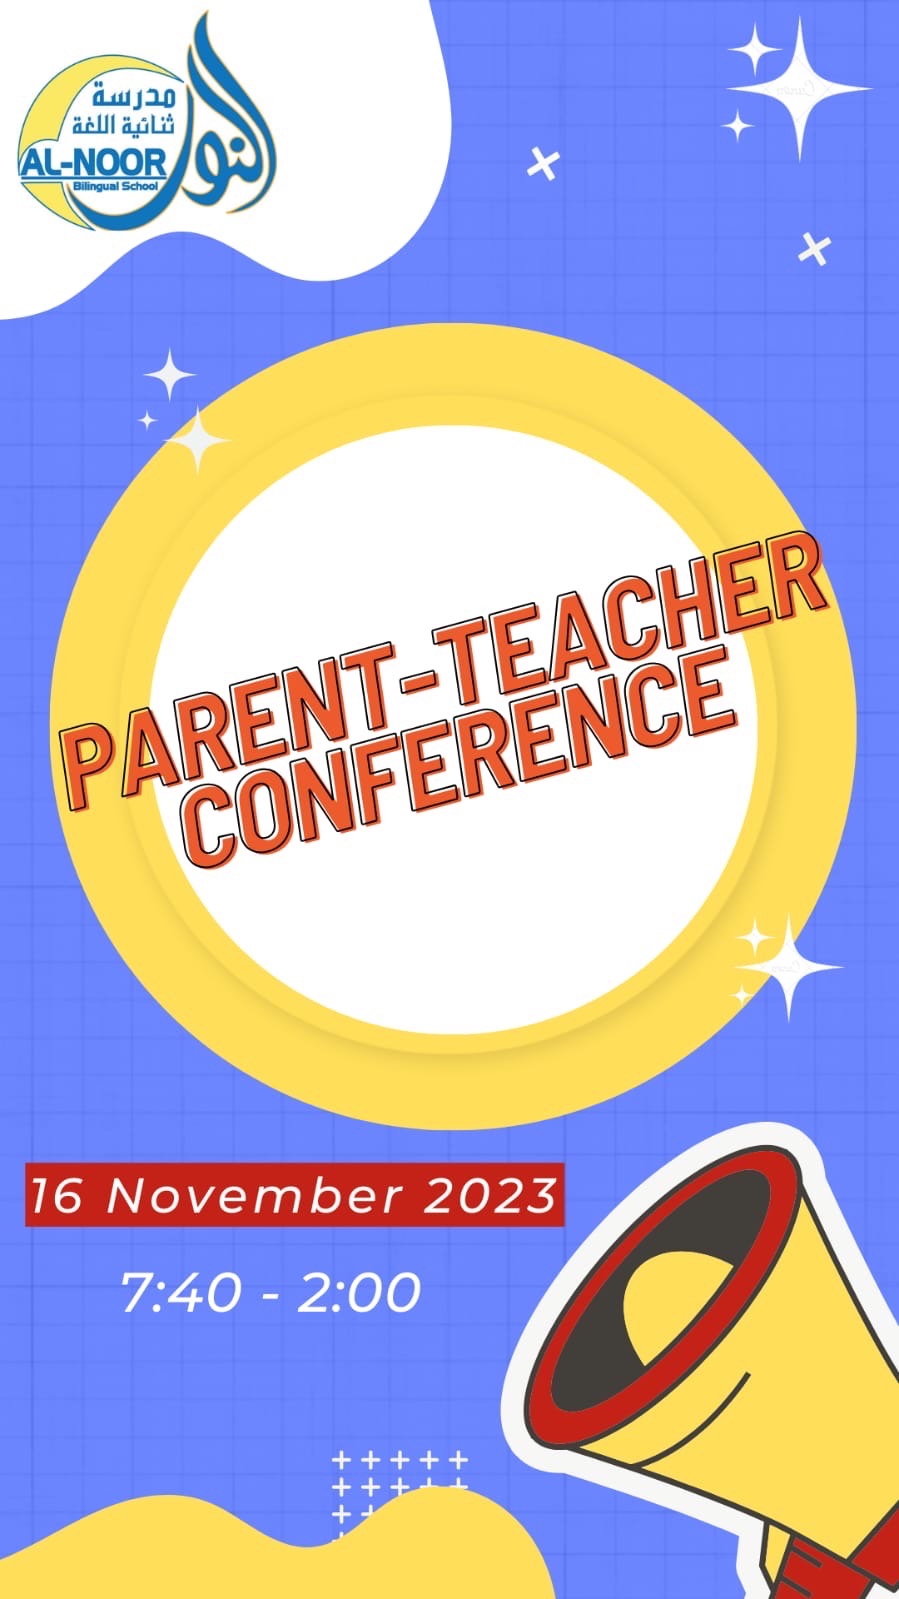 Parent-Teacher Conferences - Image 1